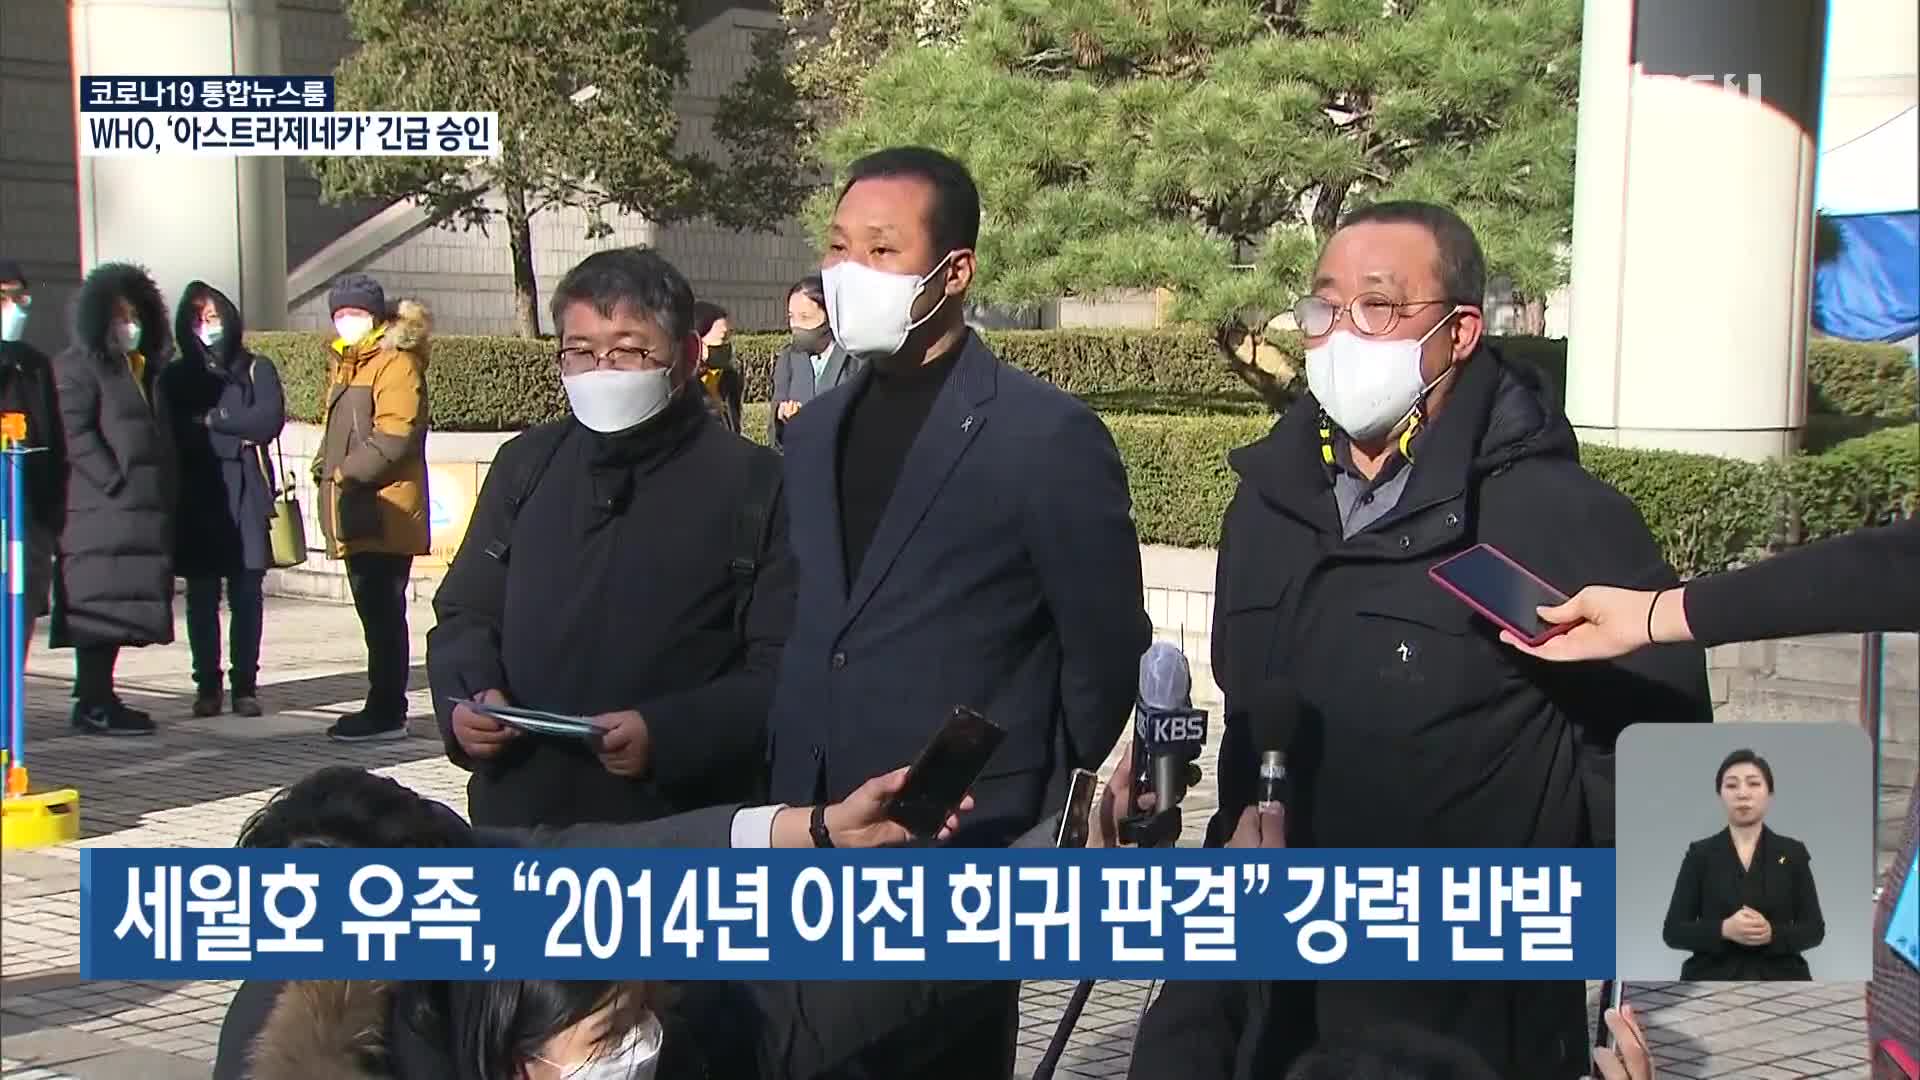 세월호 유족, “2014년 이전 회귀 판결” 강력 반발